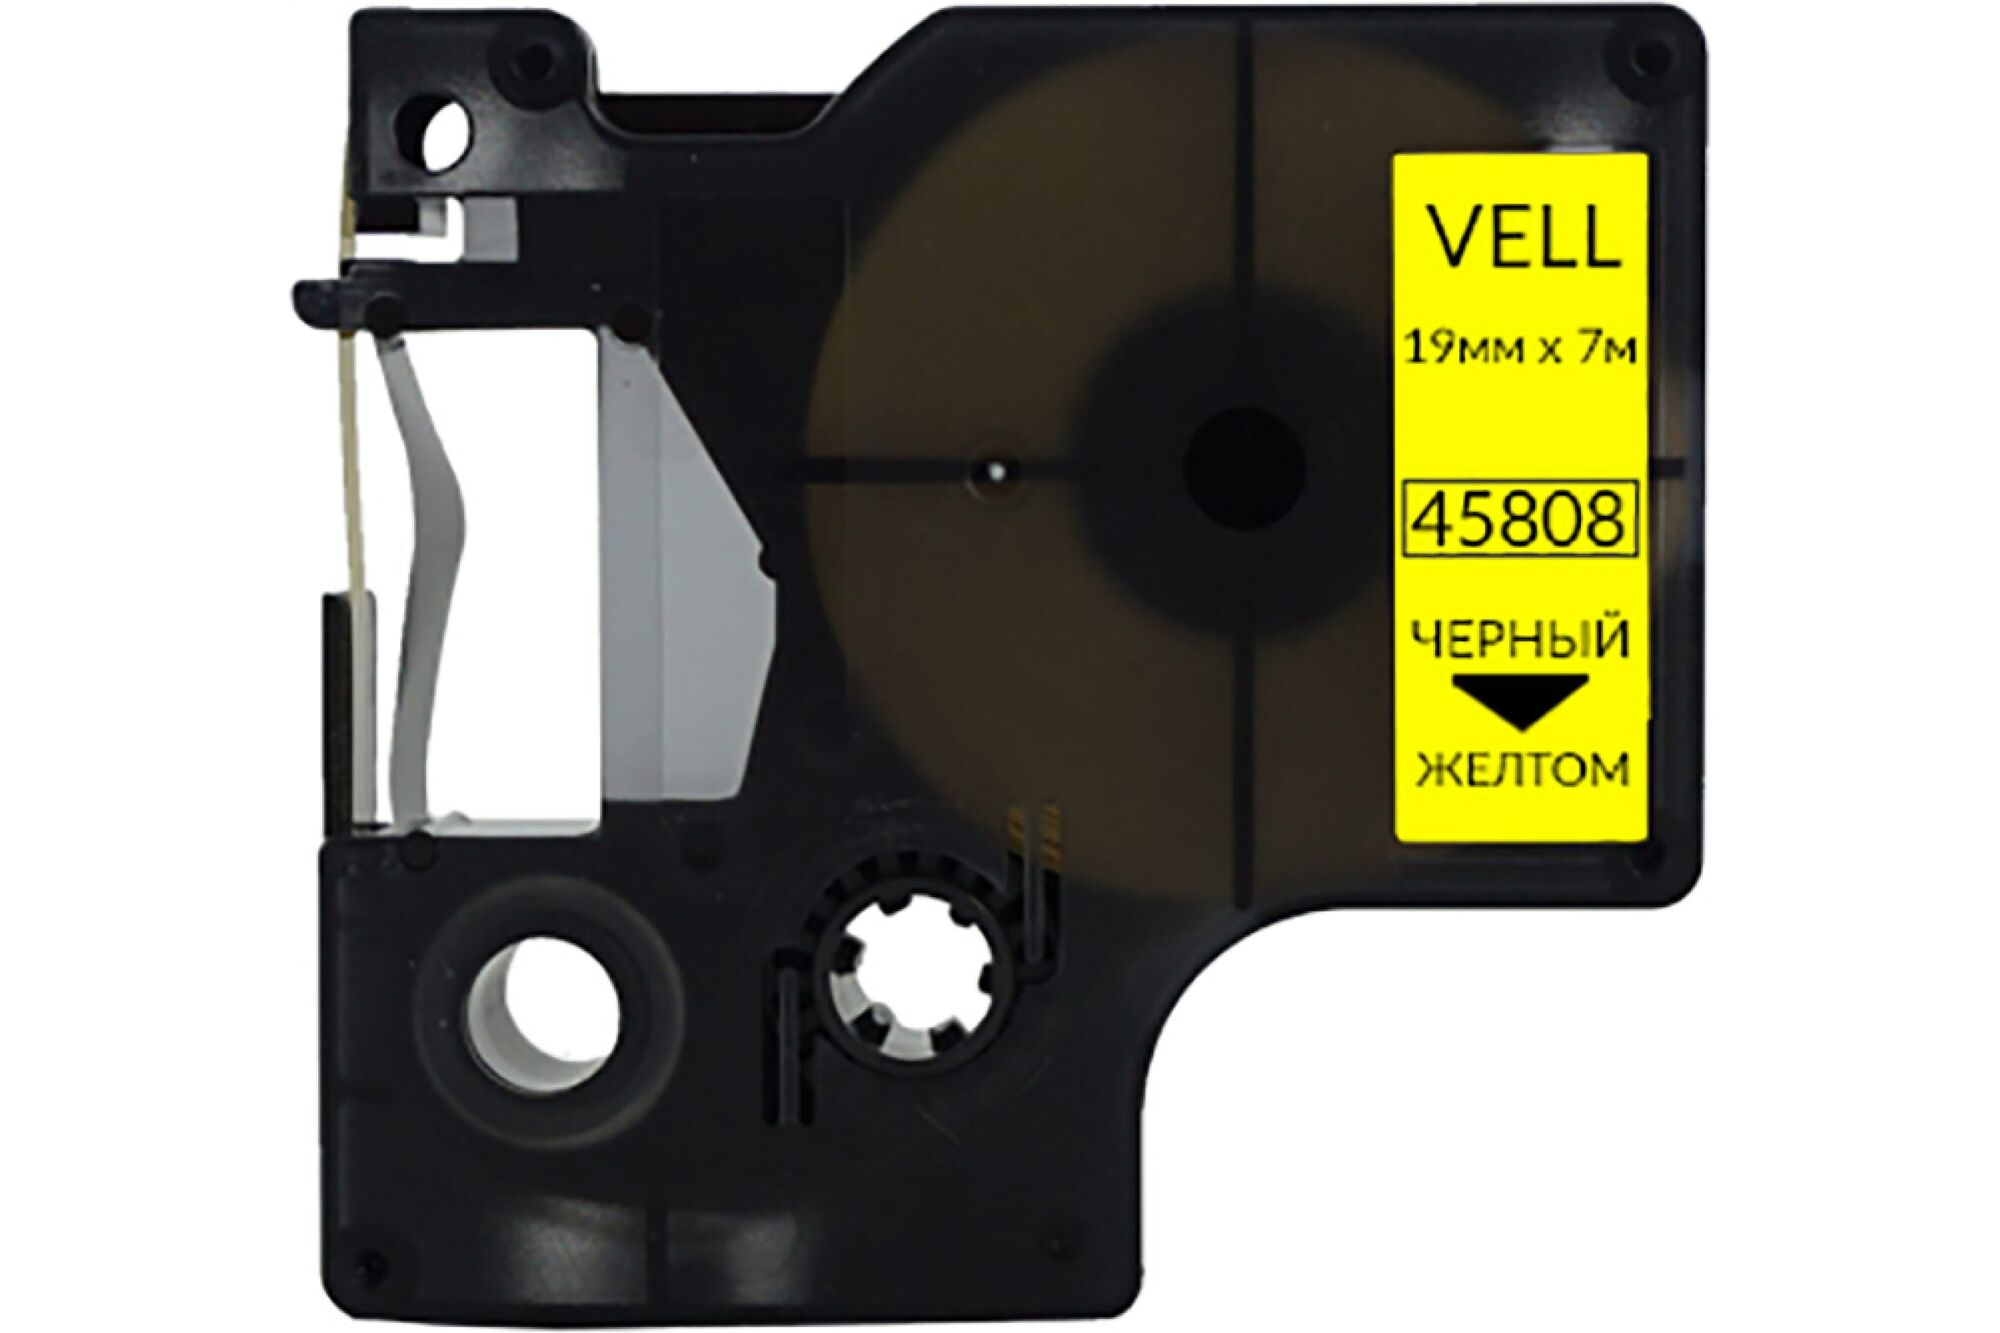 Лента Vell VL-D-S0720880/45808 19 мм, черный на желтом, для 420P/500TS/Rhino 5200/6000 328678